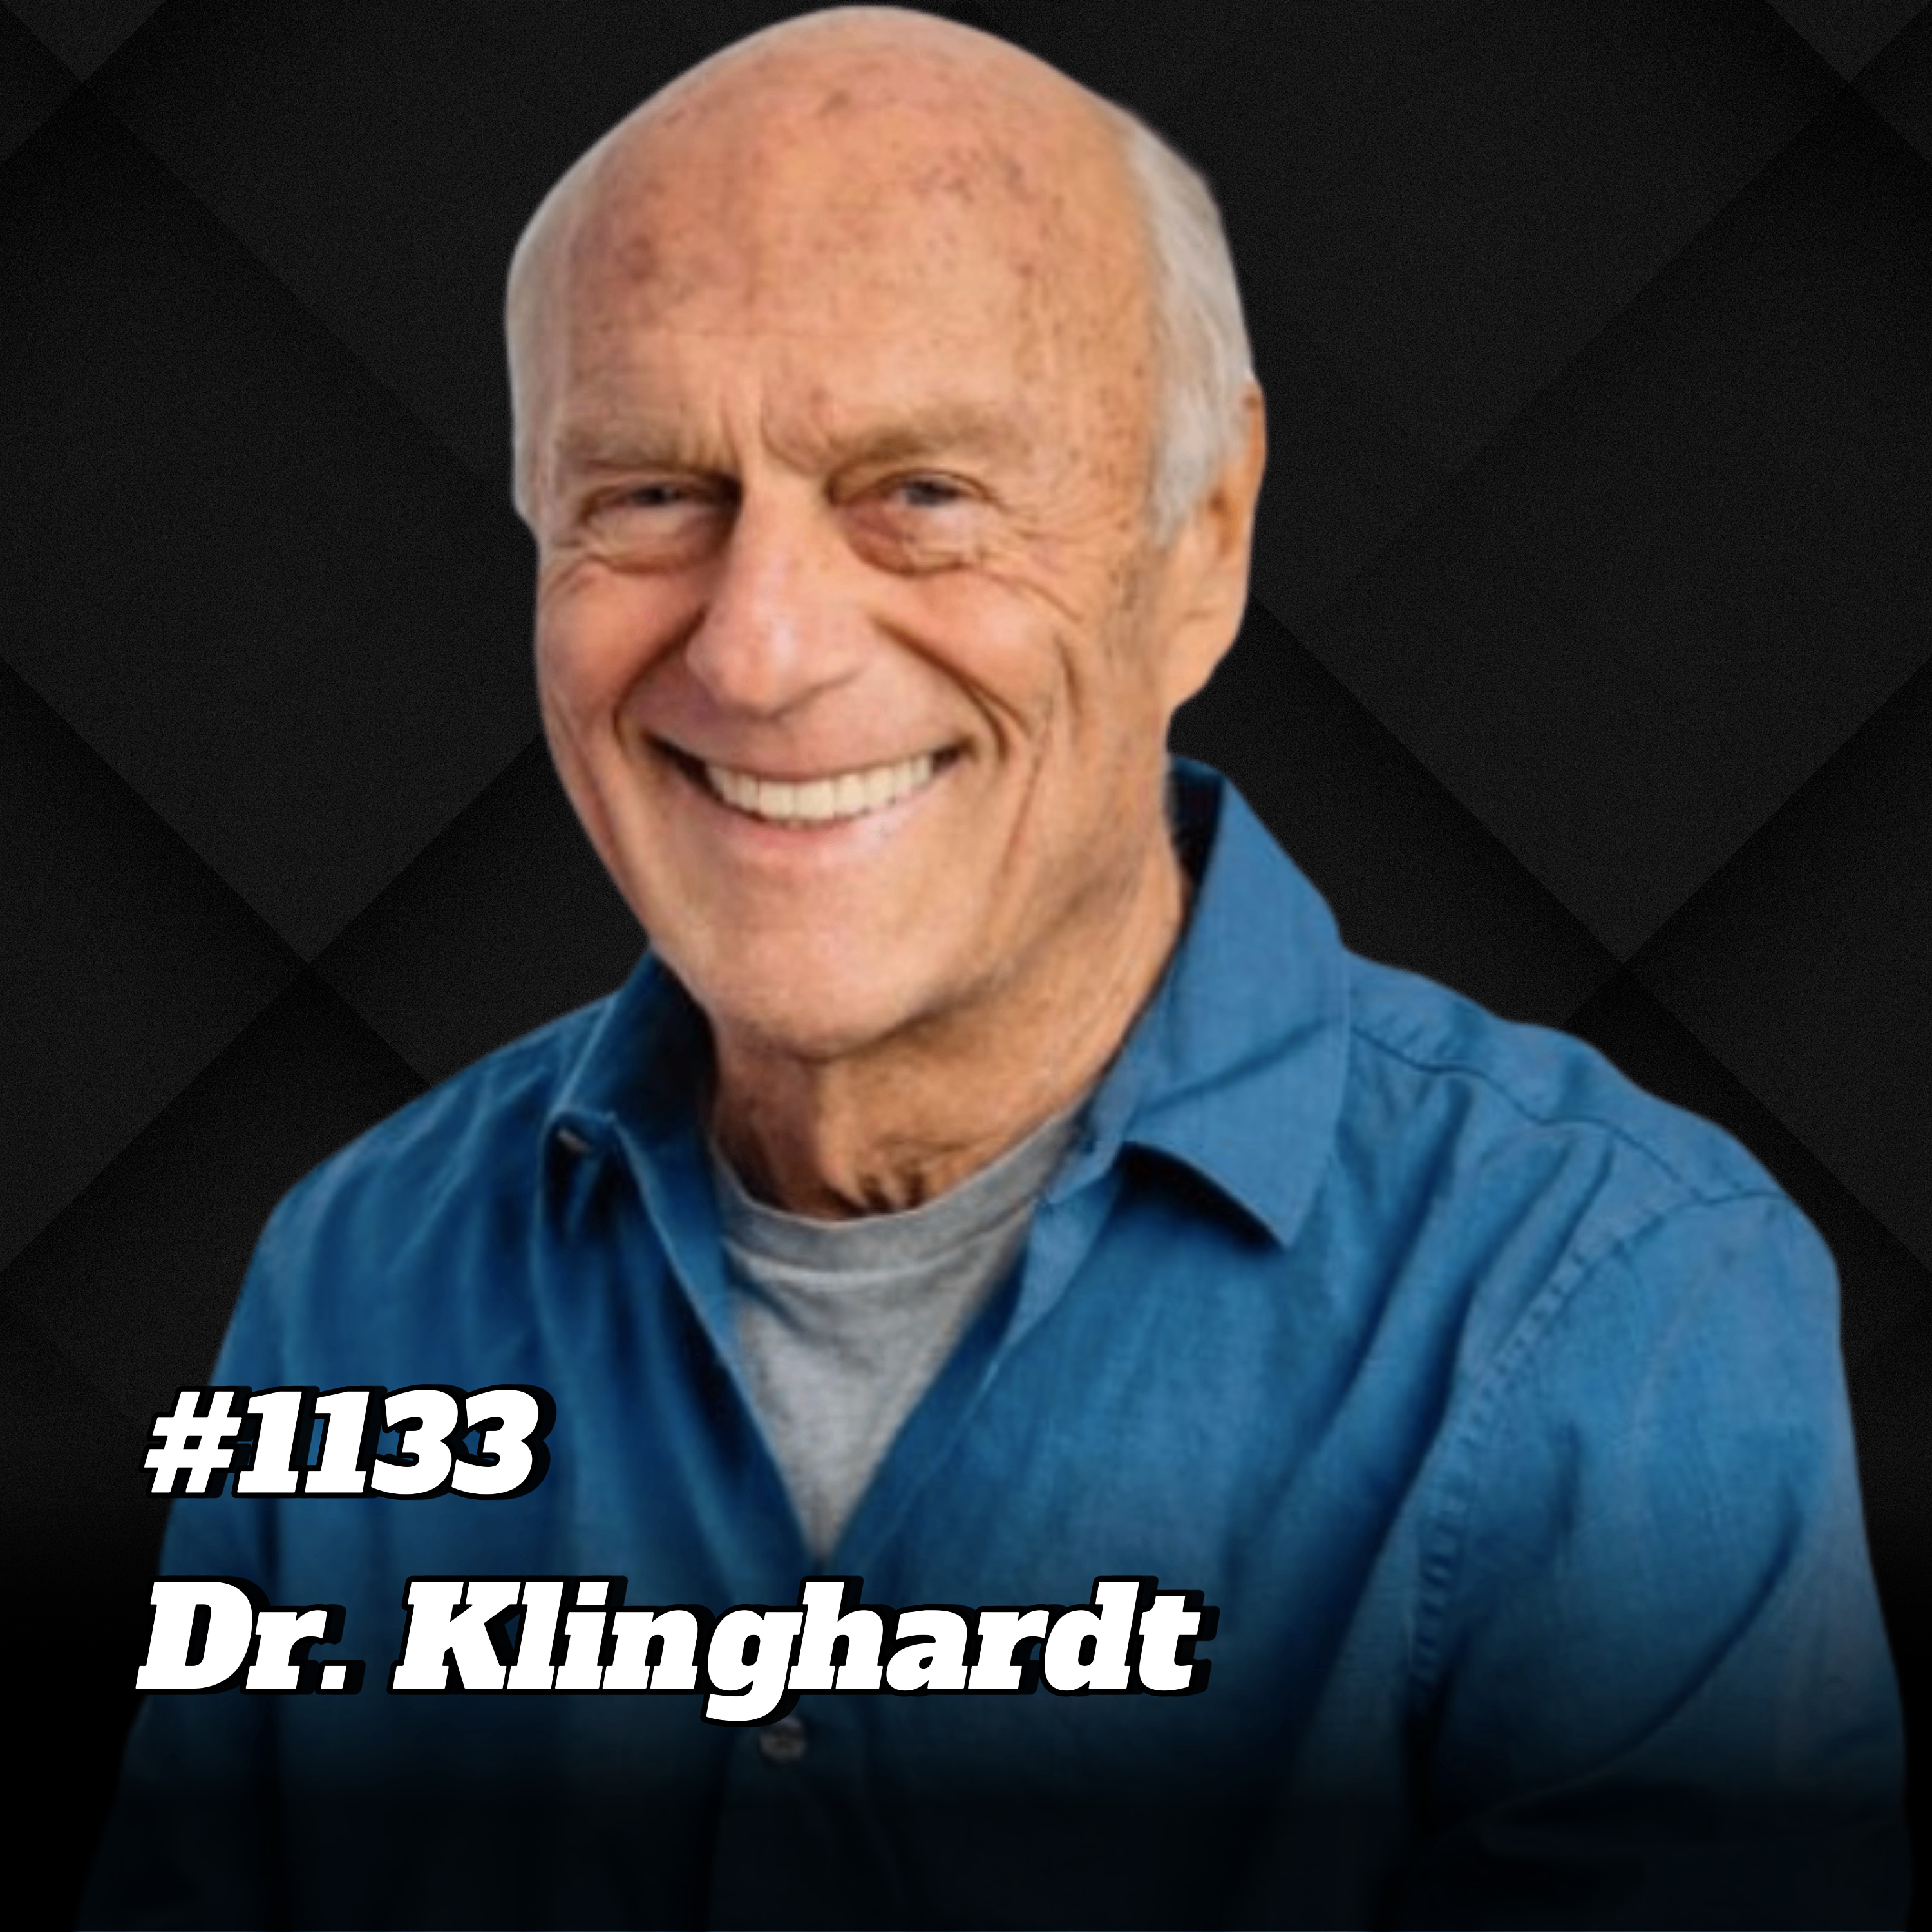 Mit natürlichen Heilmitteln Post Covid effektiv behandeln! | Dr. Klinghardt #1133